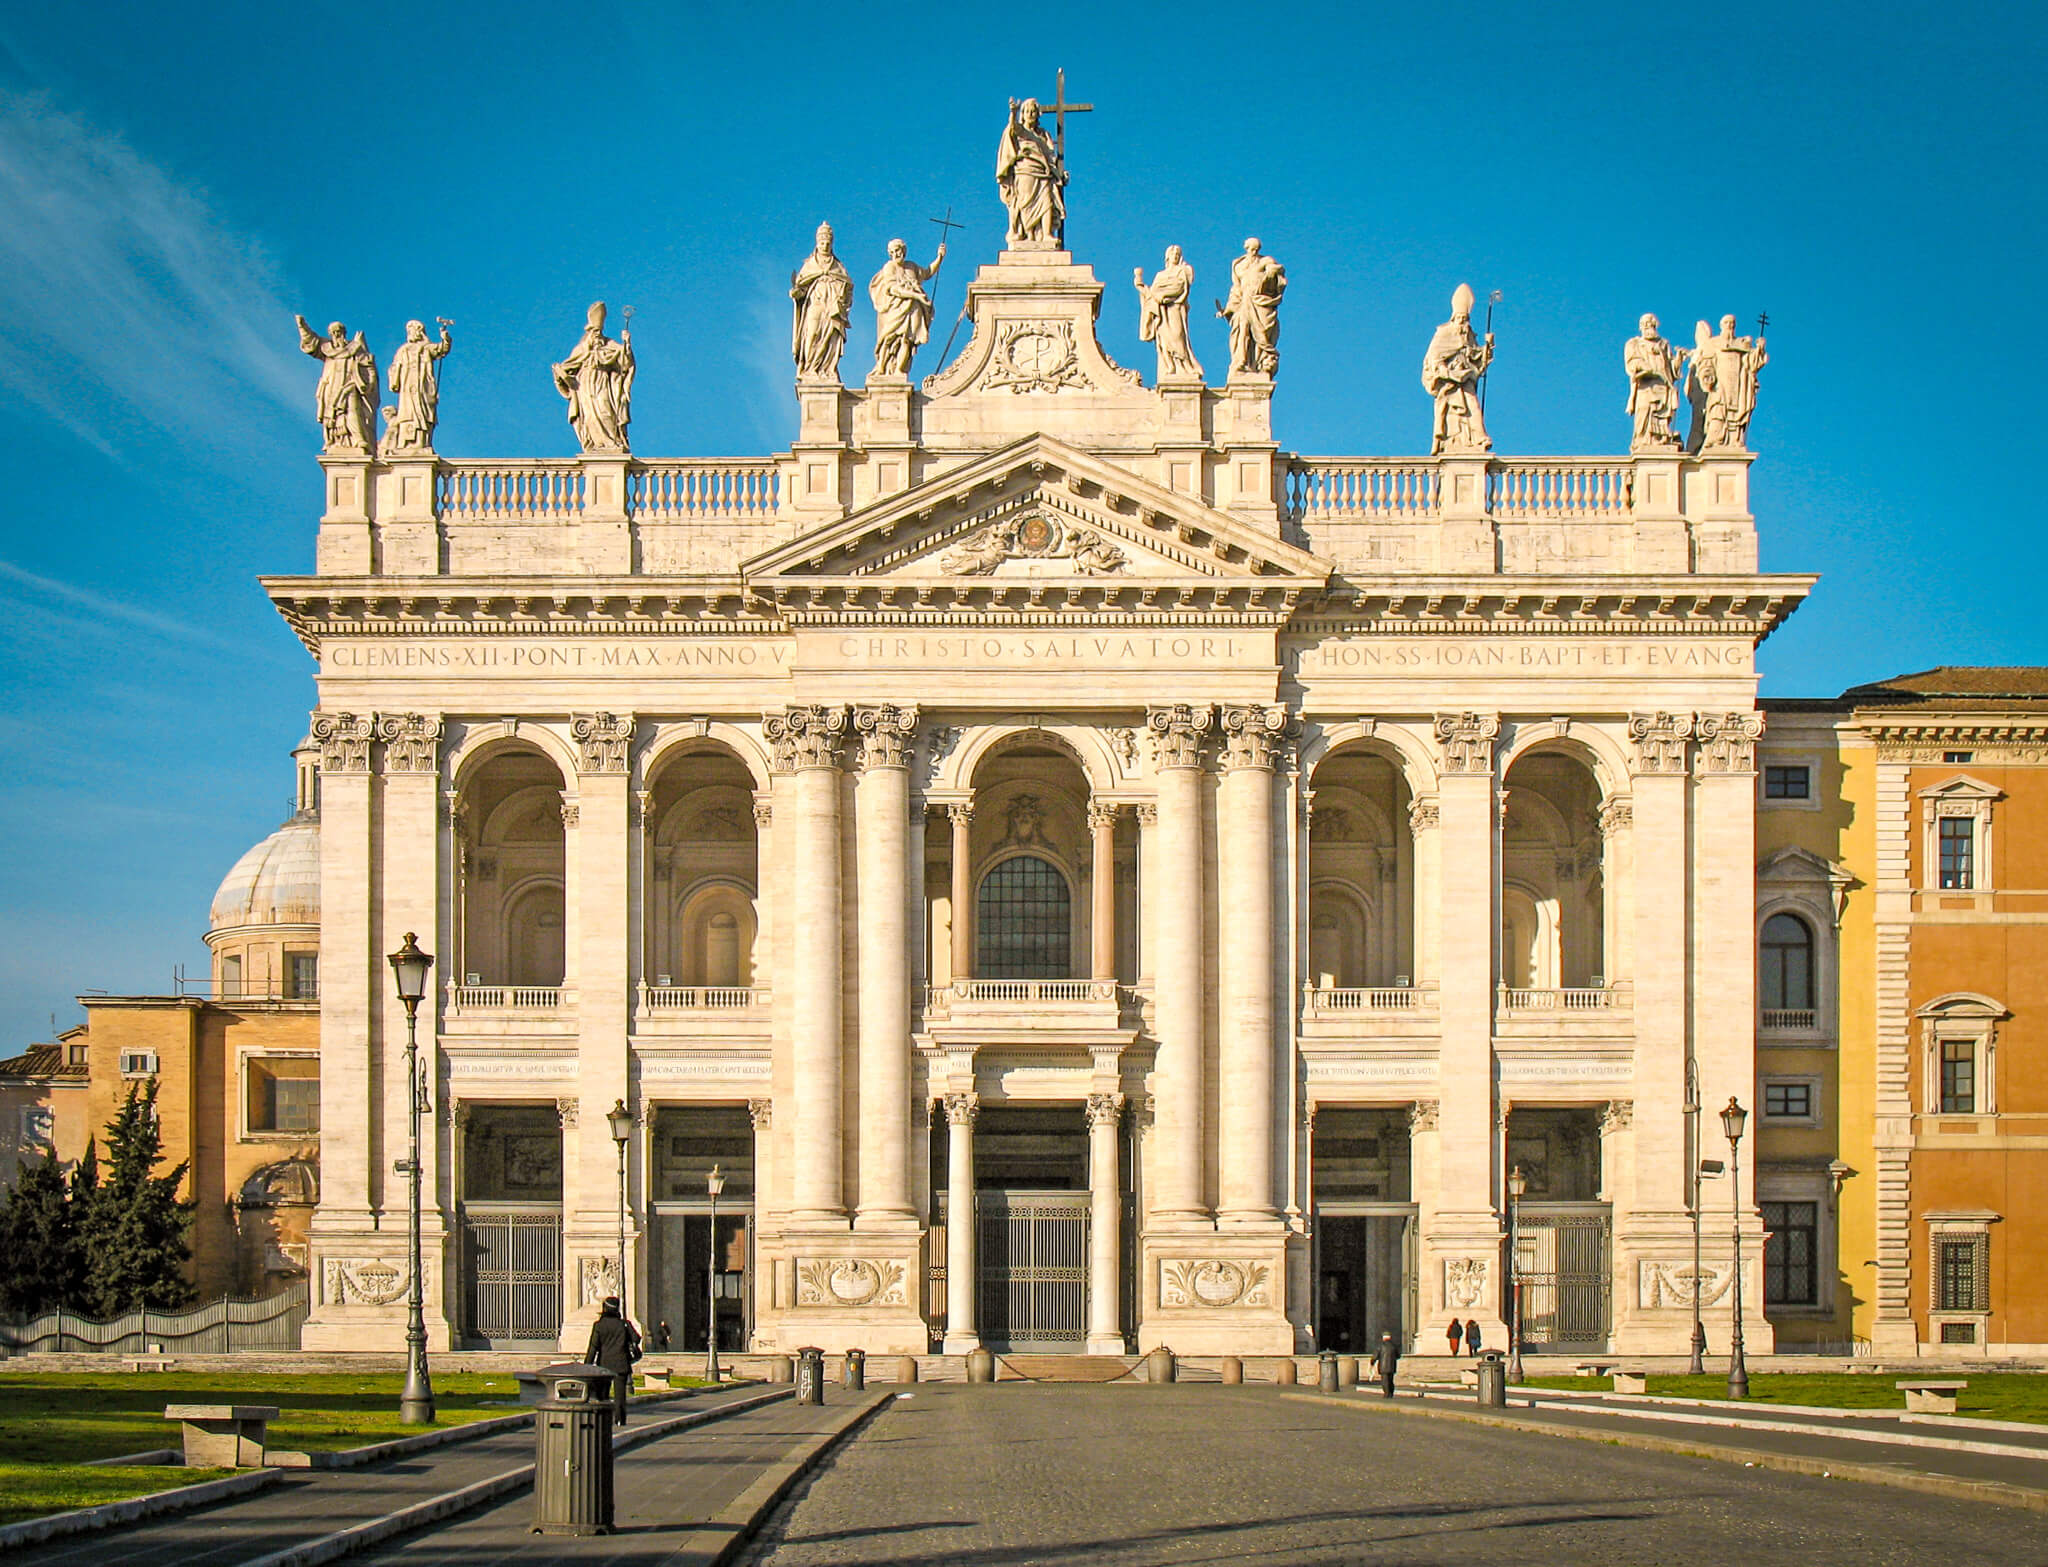 Facade of Basilica di San Giovanni in Laterano in Rome